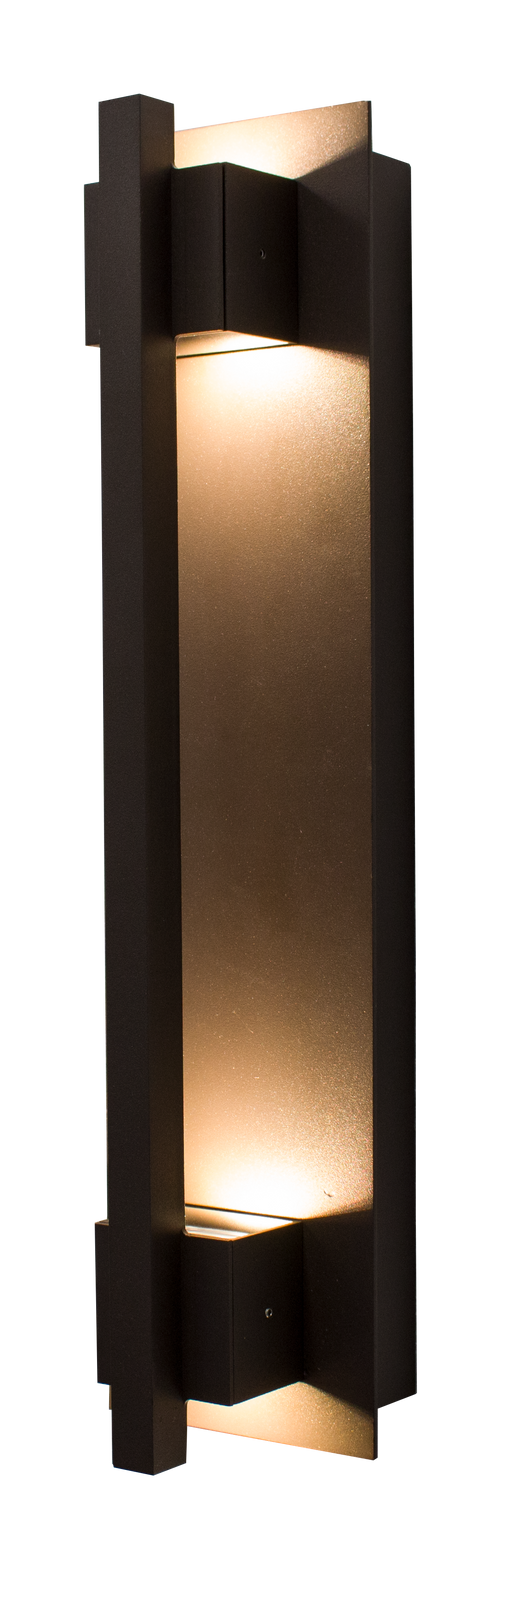 Westgate Manufacturing Crest By Westgate LED Wall Mount Sconces 1800Lm 4000K 120-277V Dark Bronze (CRE-HL20-03-40K-BR)